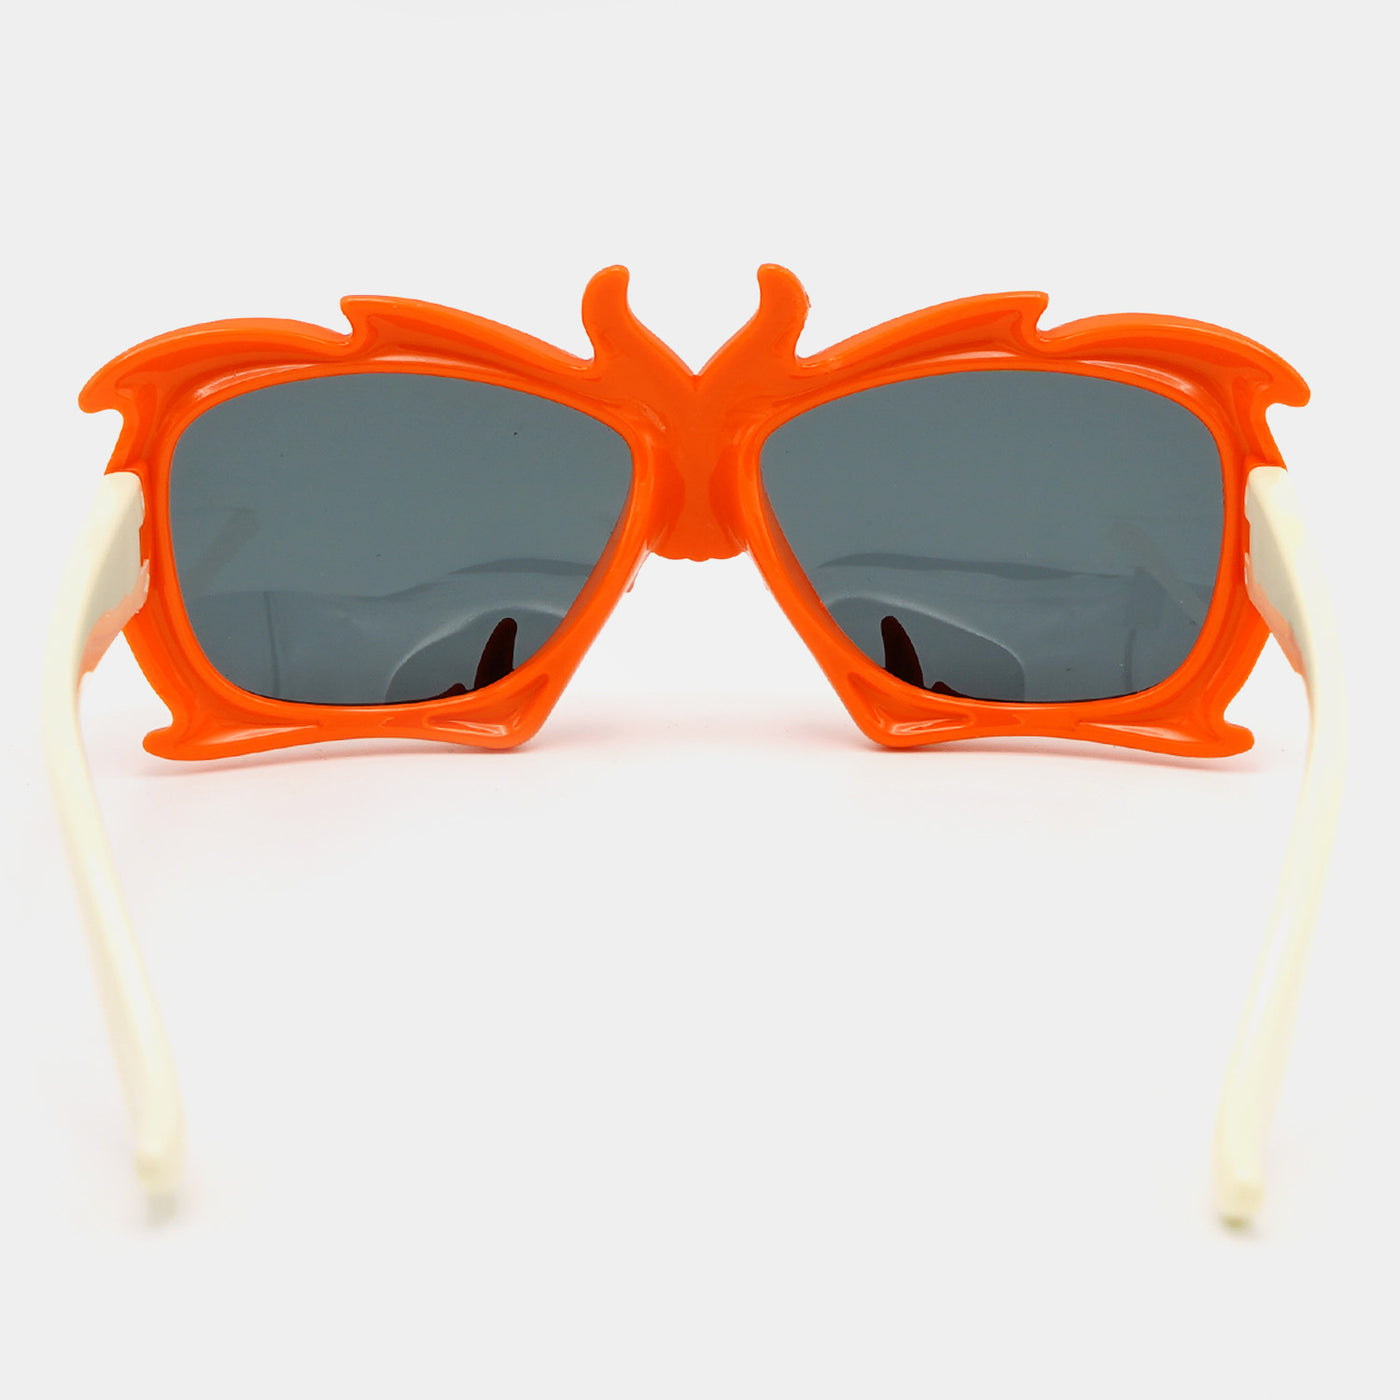 Fancy Kids Sunglasses